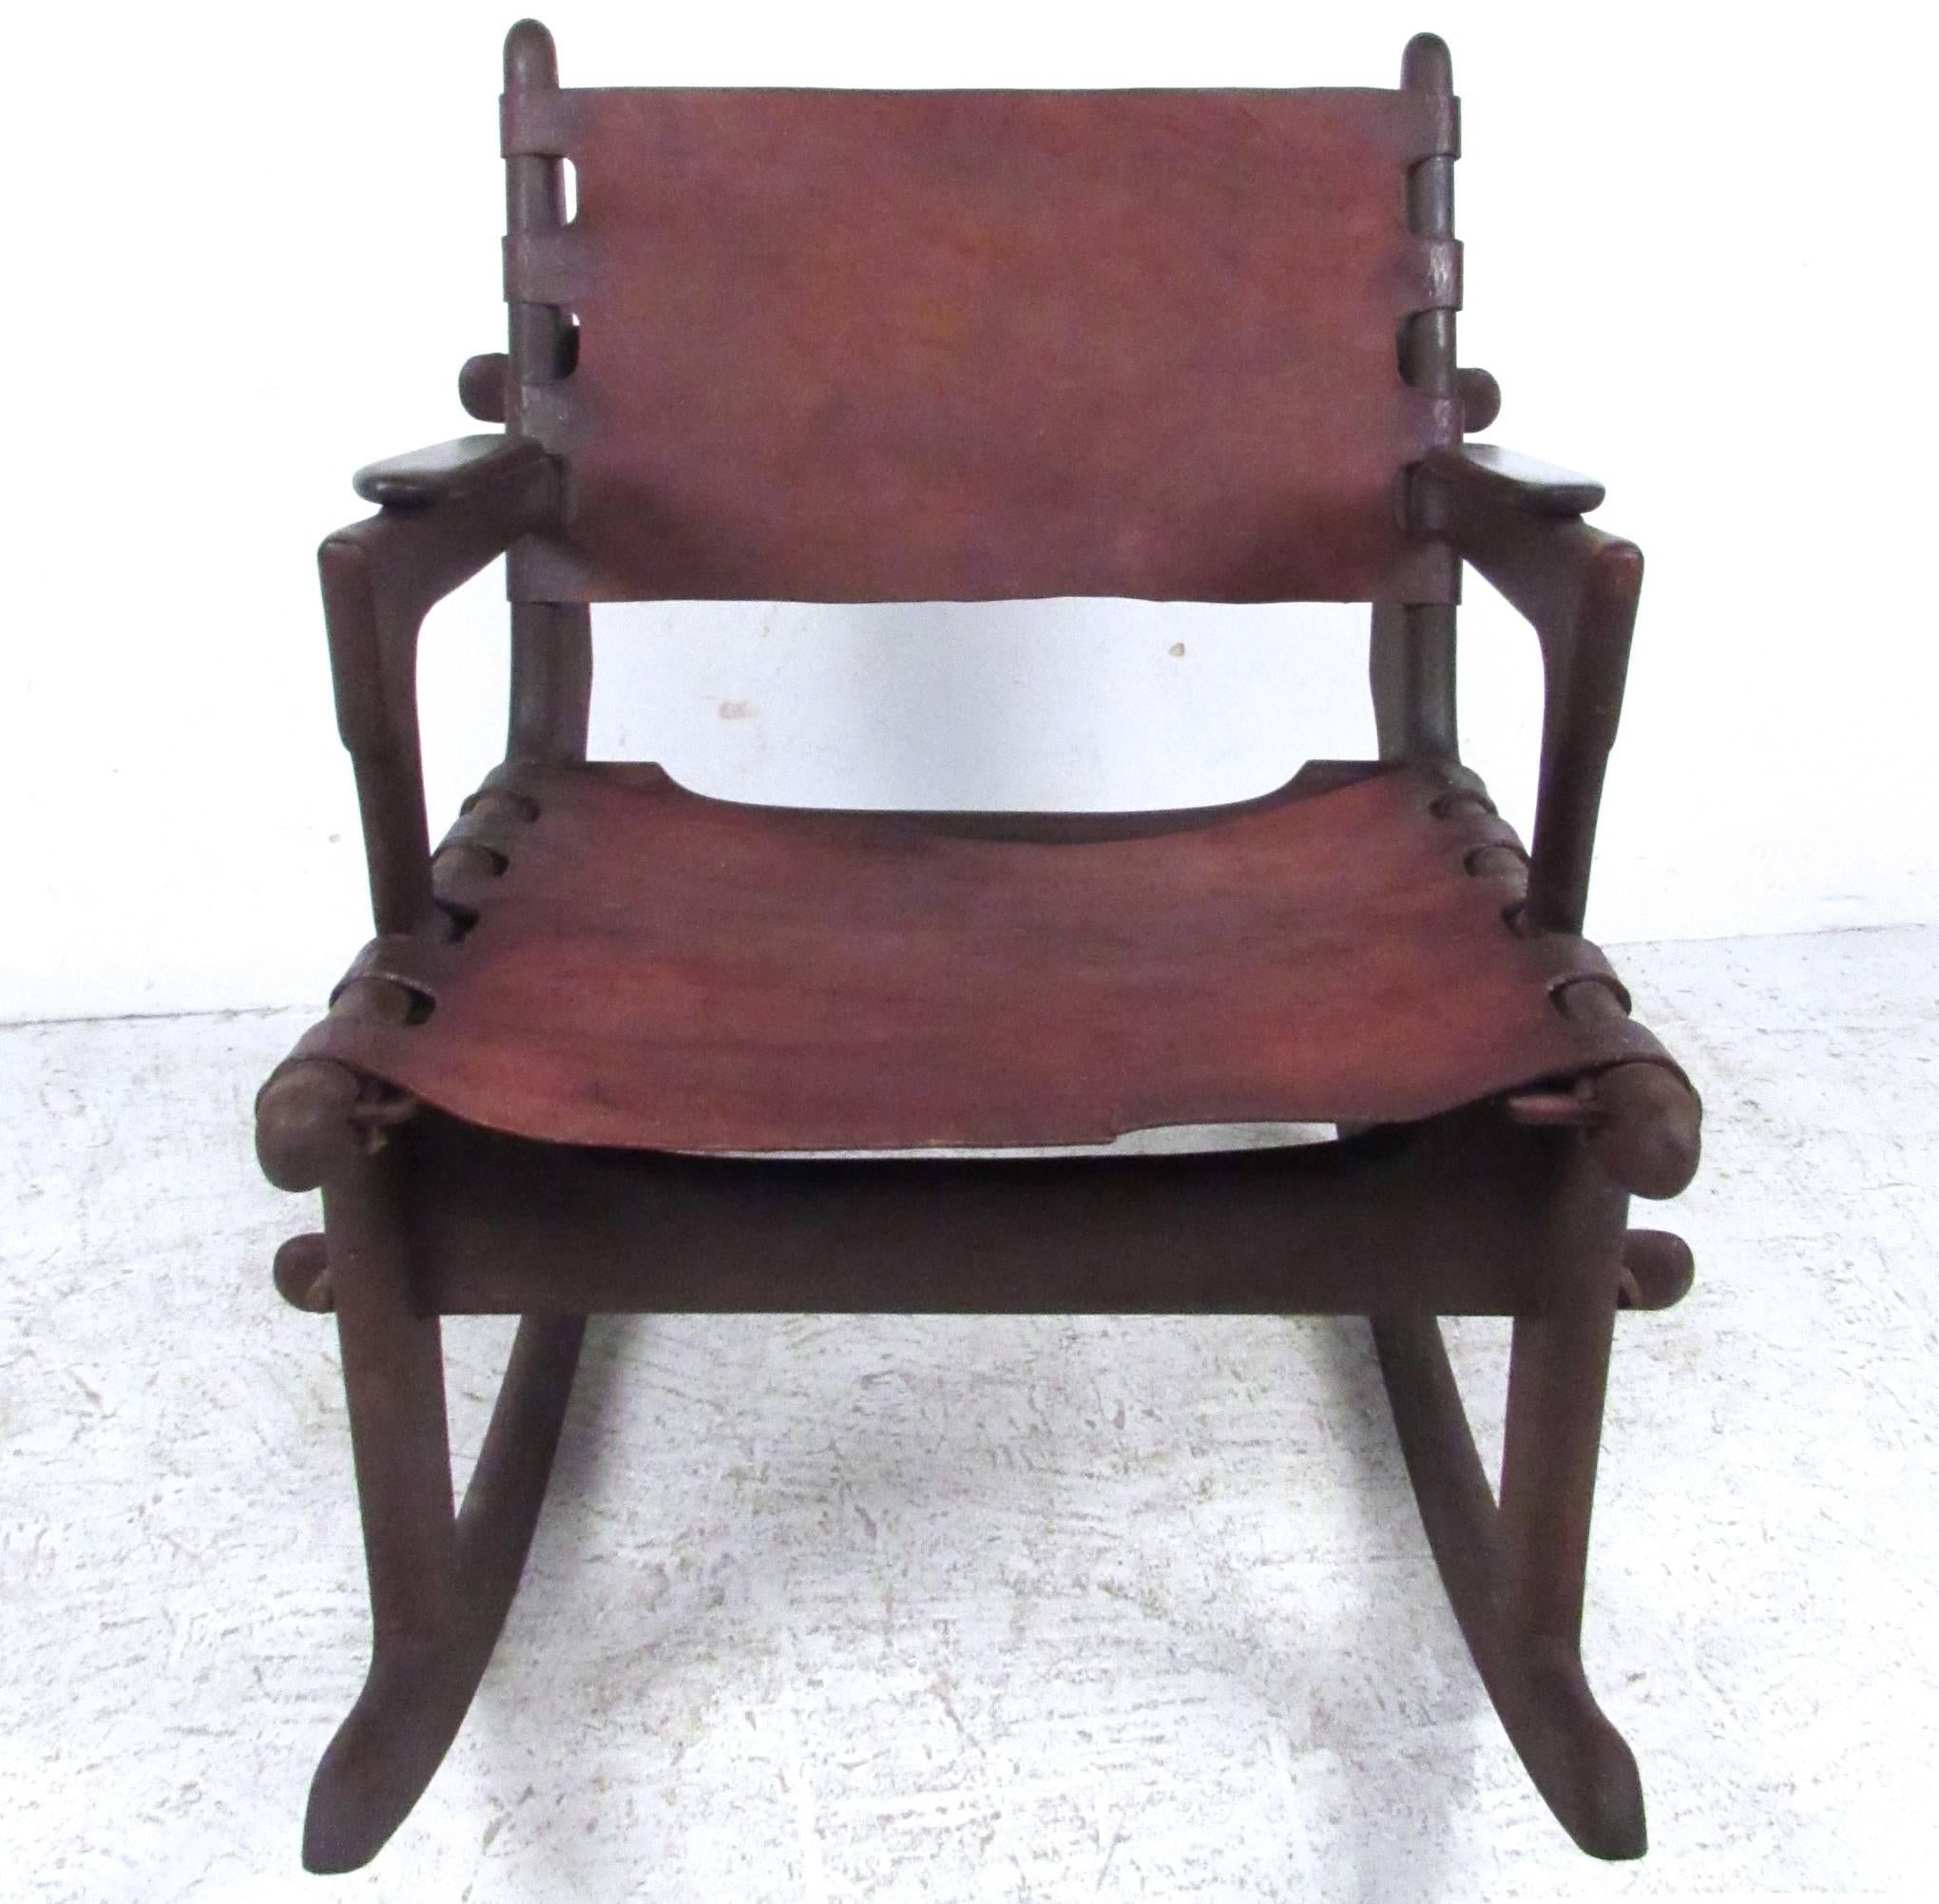 Dieser einzigartige Vintage-Schaukelstuhl des ecuadorianischen Designers Angel Pazmino verfügt über einen Ledersitz und eine einzigartige Dübelkonstruktion. Ein stilvoller primitiv-moderner Stuhl für jede Umgebung. Bitte bestätigen Sie den Standort